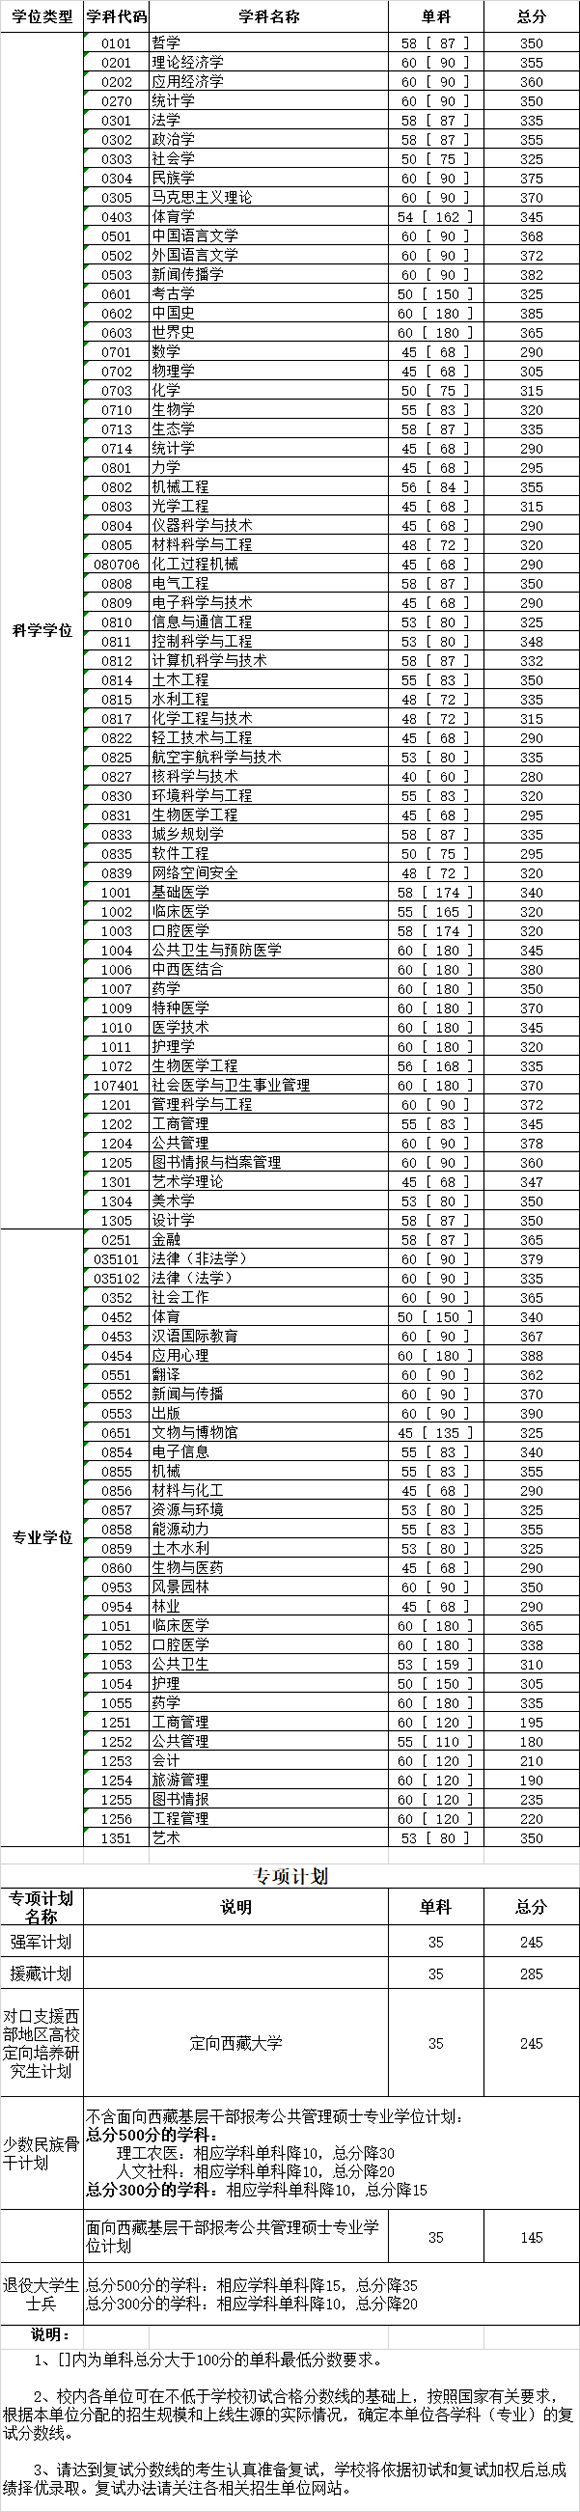 四川大学2020年考研复试分数线公布